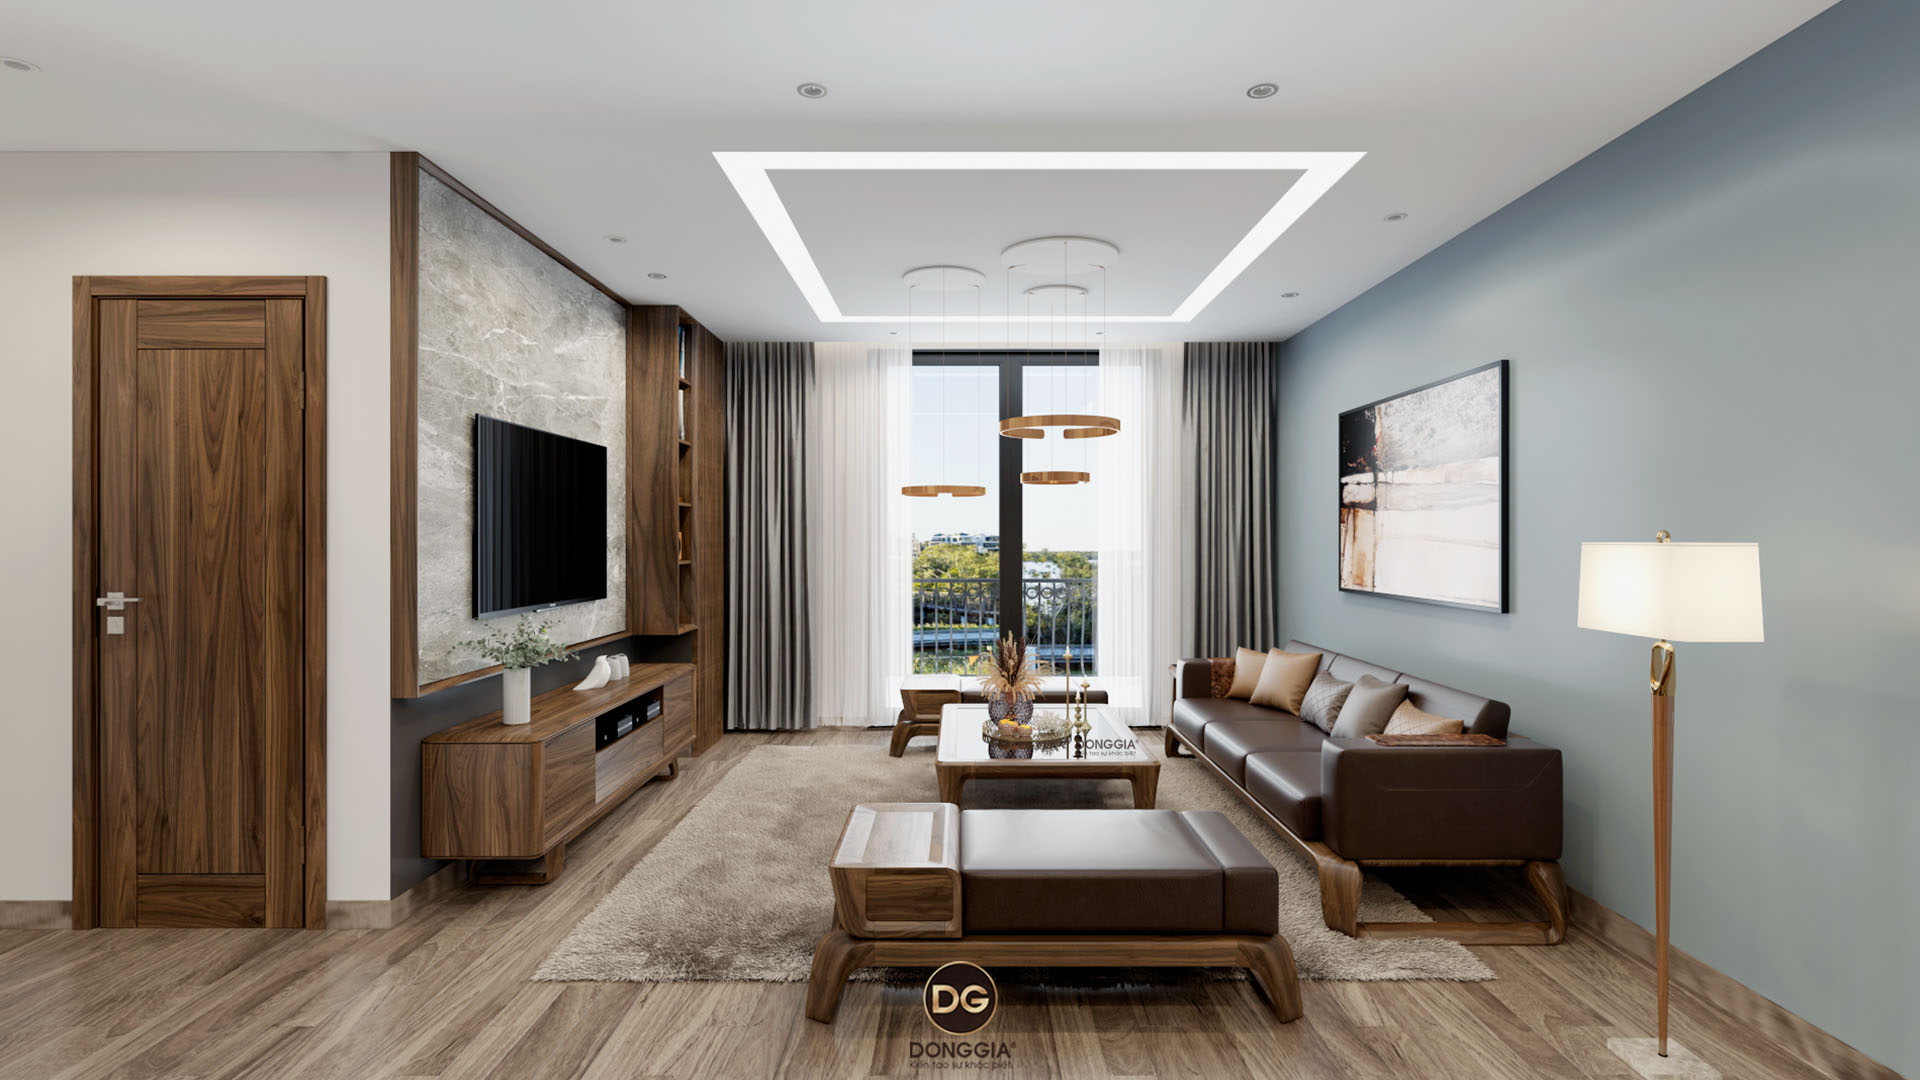 3 mẫu thiết kế nội thất cho căn hộ chung cư 60m2 tuyệt đẹp được chọn lọc